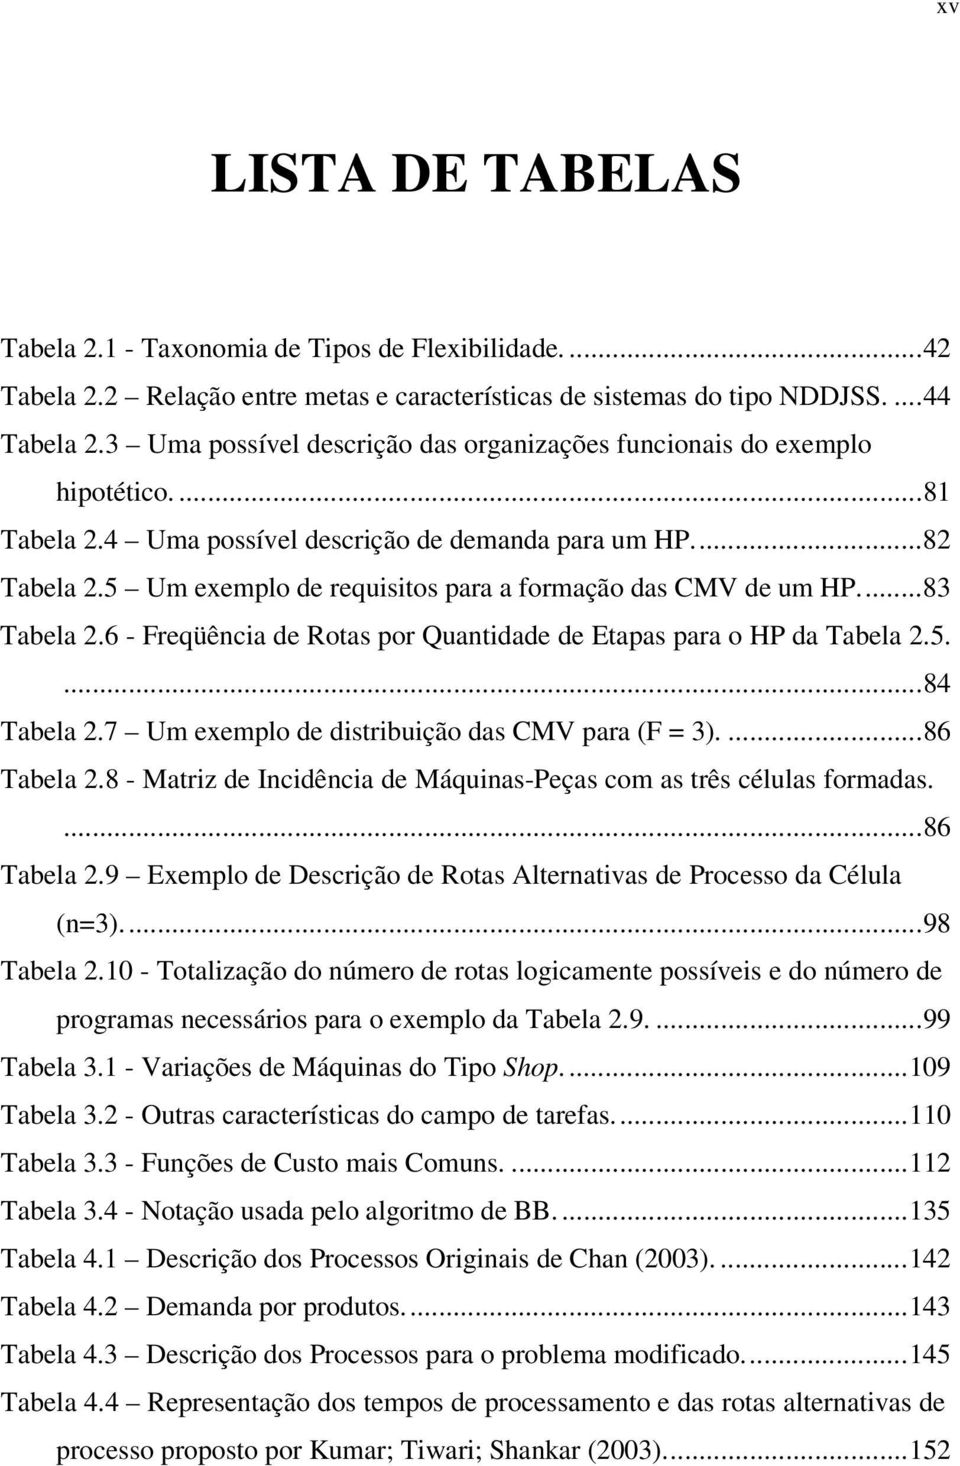 5 Um exemplo de requisitos para a formação das CMV de um HP...8 Tabela 2.6 Freqüência de Rotas por Quantidade de Etapas para o HP da Tabela 2.5....84 Tabela 2.